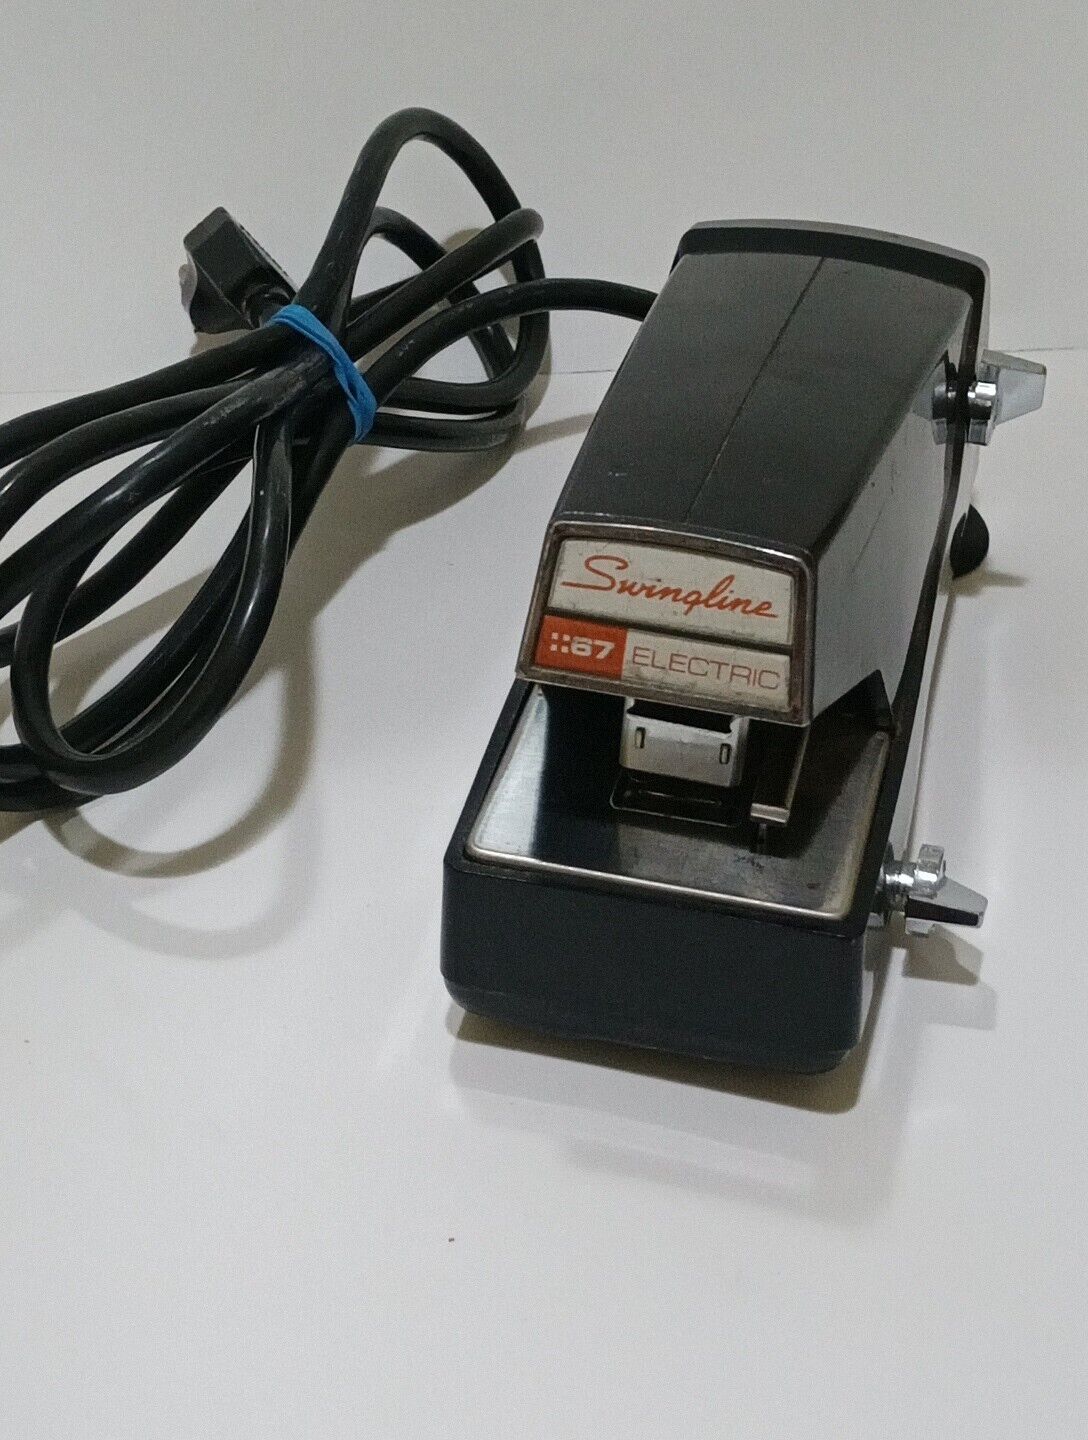 Vintage Swingline Stapler Model 67 Heavy Duty Electric Desktop Black WORKING